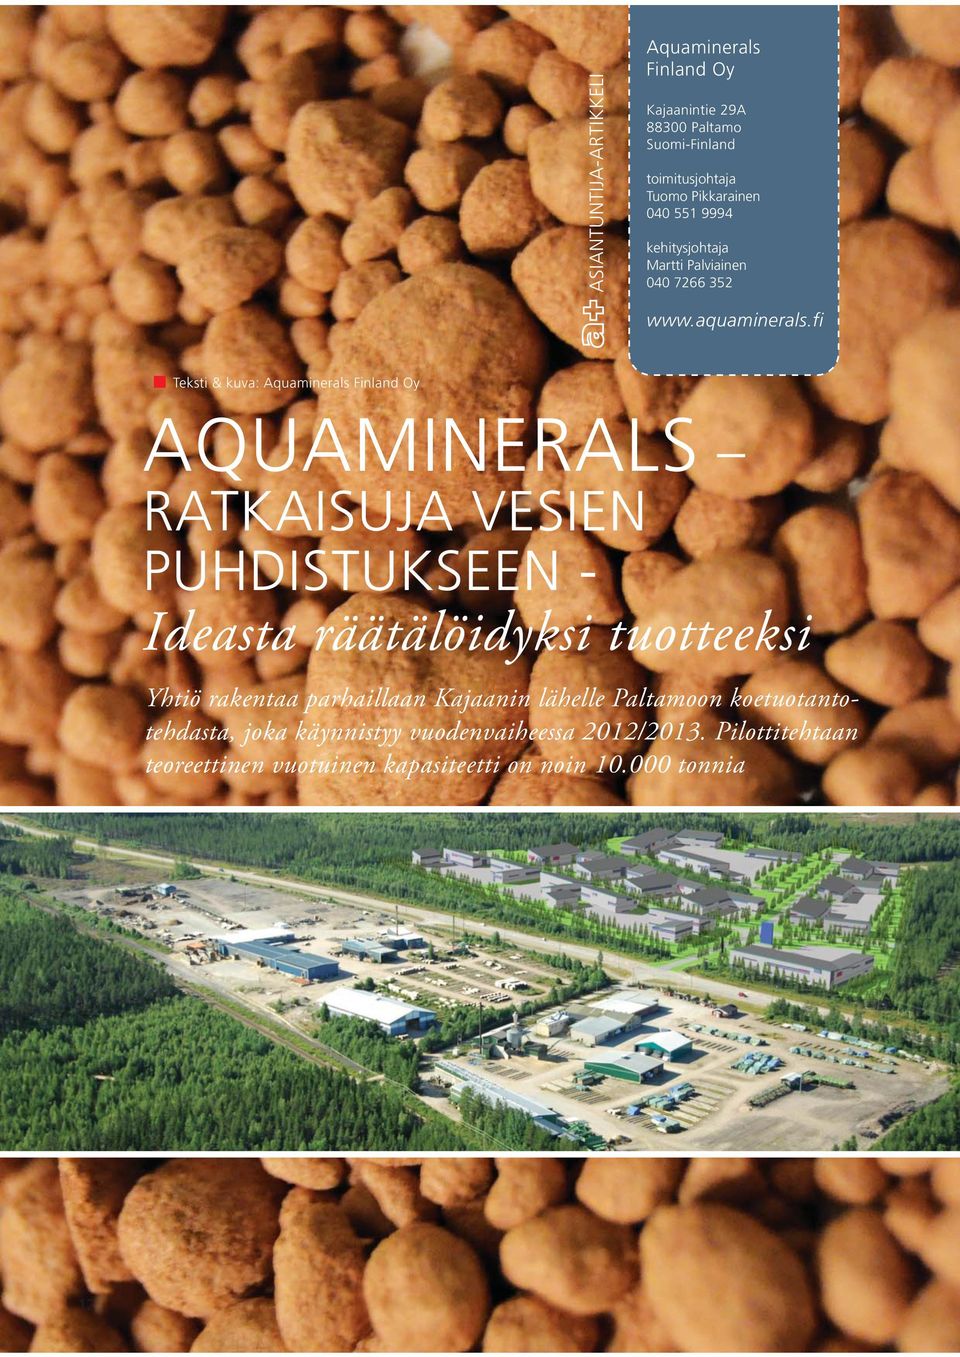 fi Teksti & kuva: Aquaminerals Finland Oy AQUAMINERALS RATKAISUJA VESIEN PUHDISTUKSEEN - Ideasta räätälöidyksi tuotteeksi Yhtiö